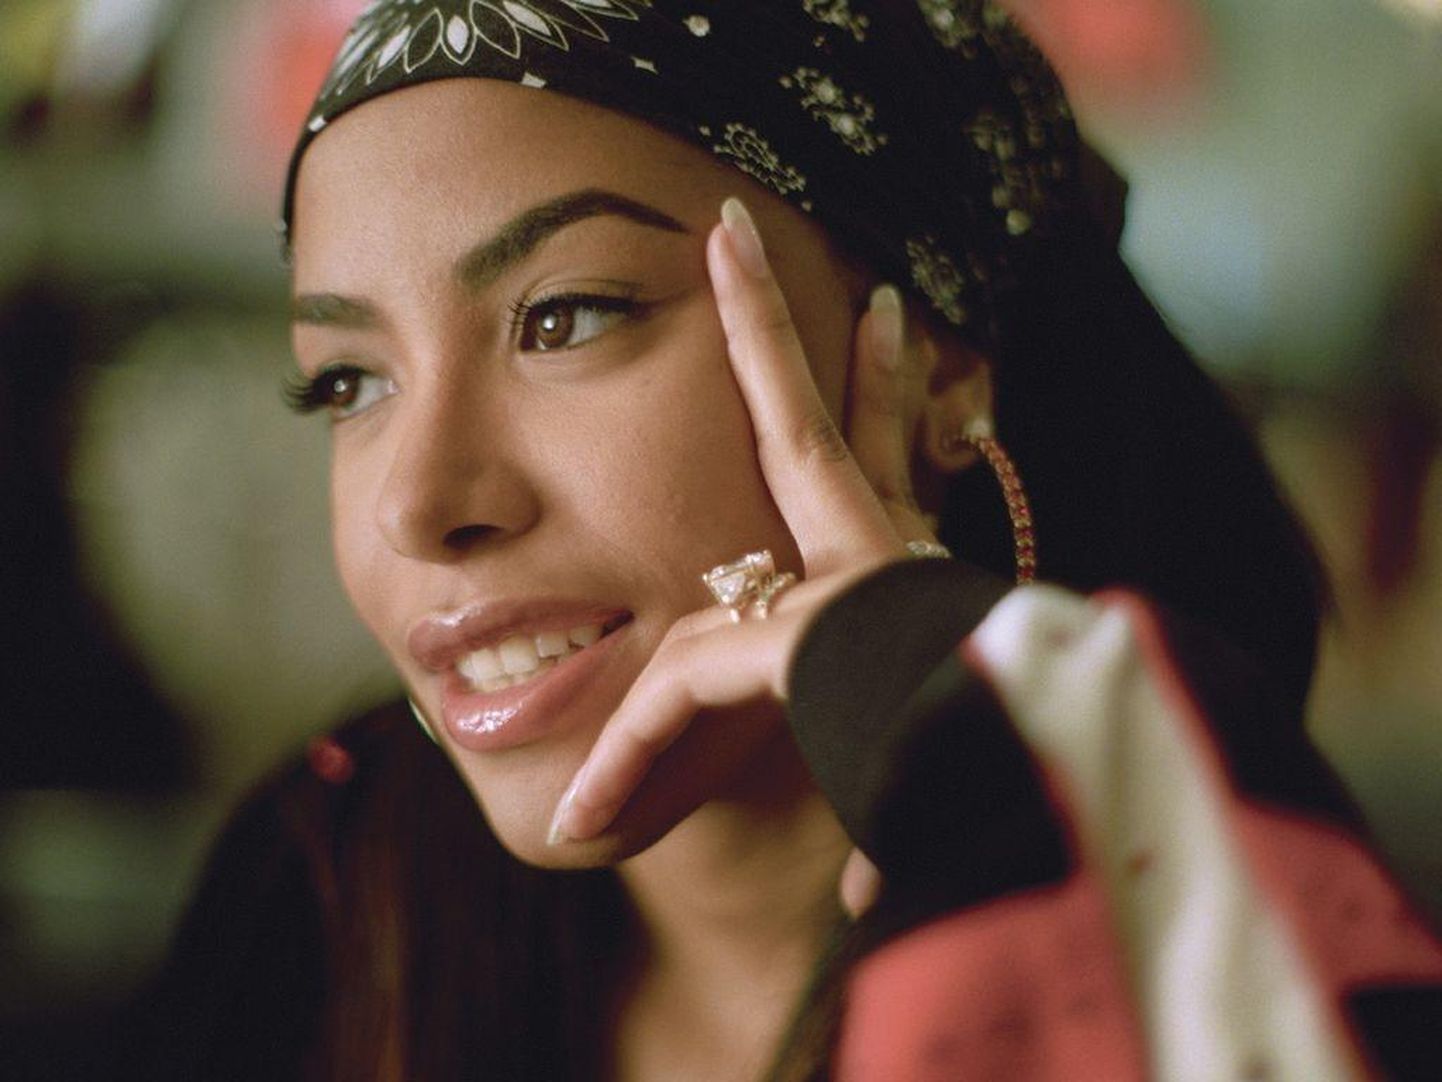 Varalahkunud rn&#39;b-staar Aaliyah 